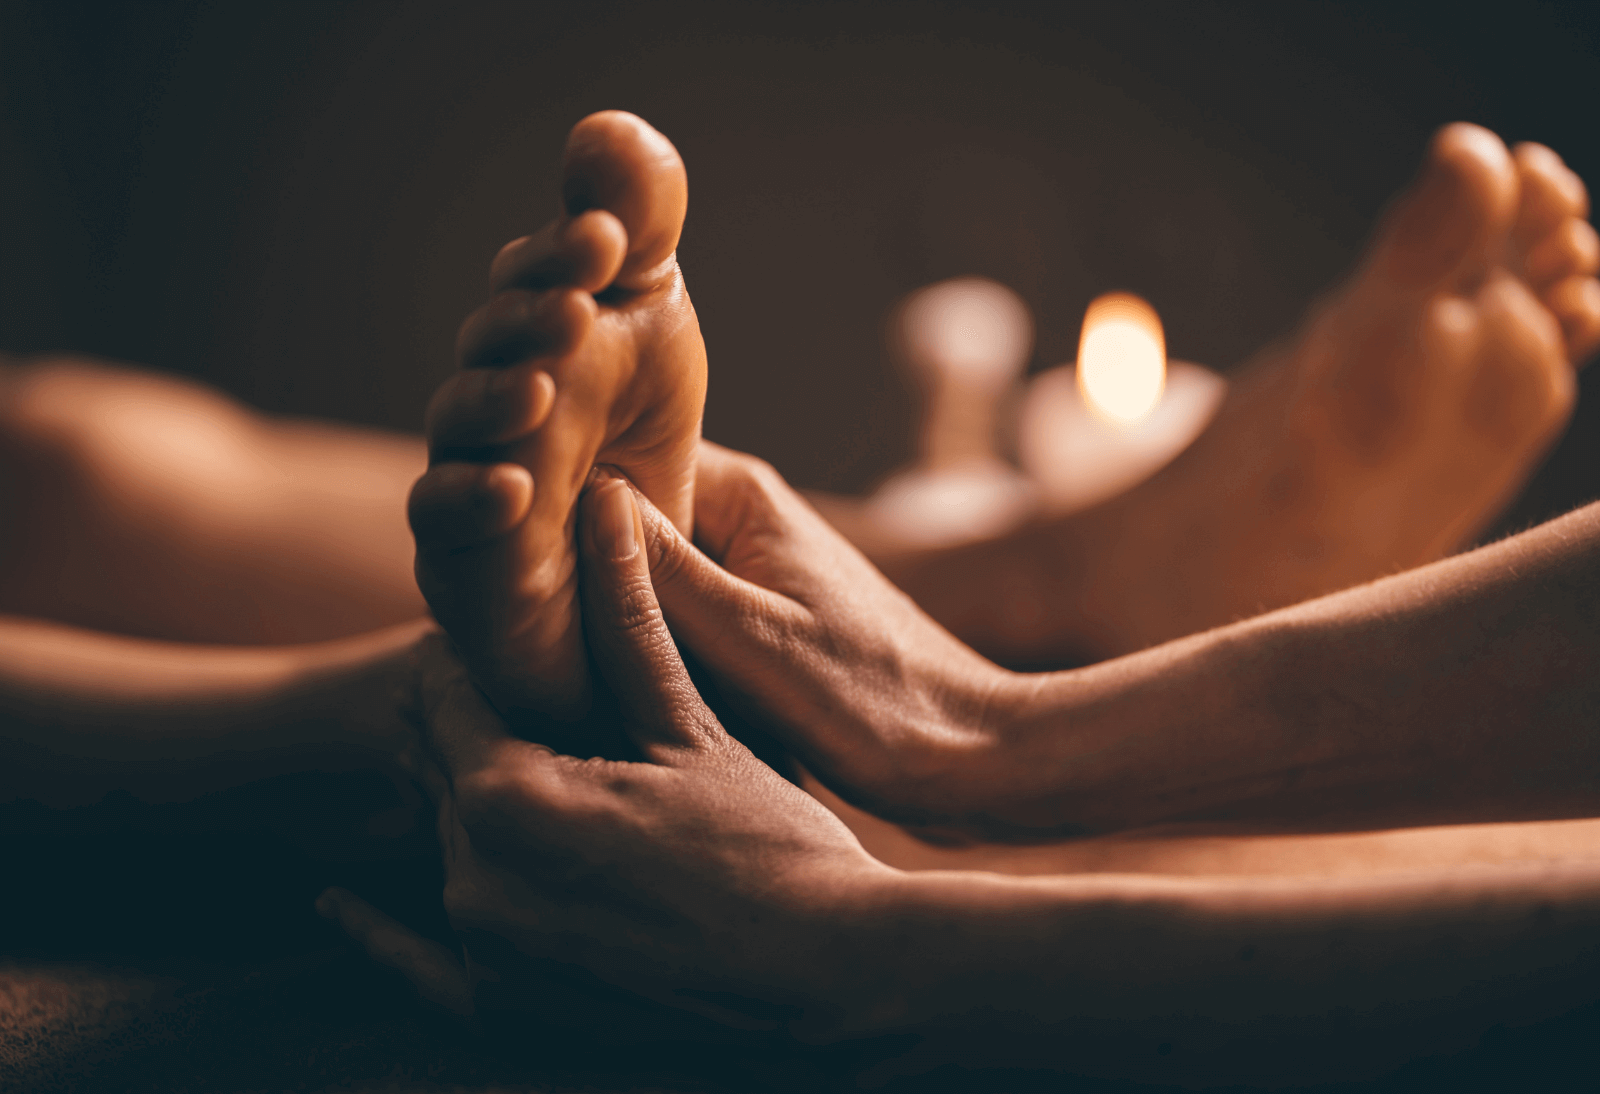 a woman recieiving a foot massage at a spa resort